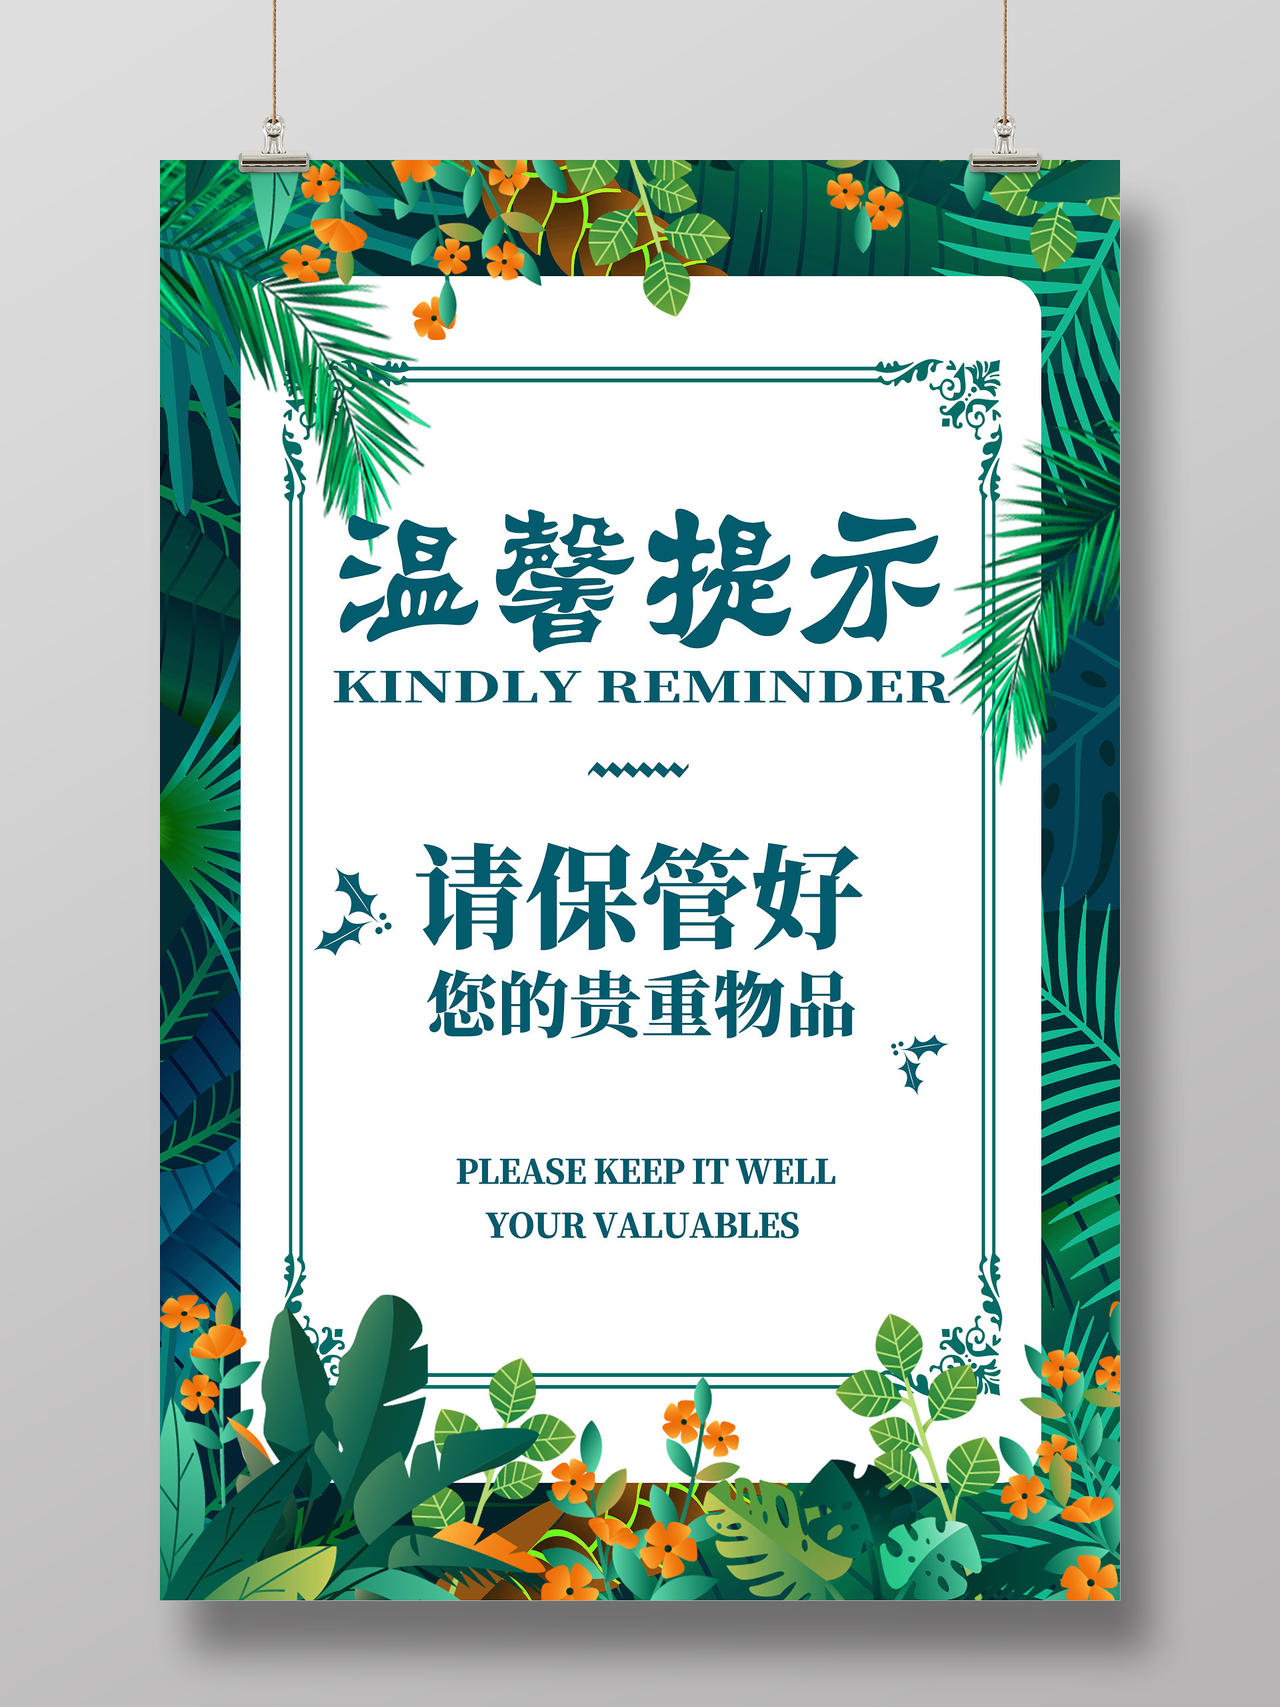 绿色卡通雨林植物请保管好您的贵重物品温馨提示海报